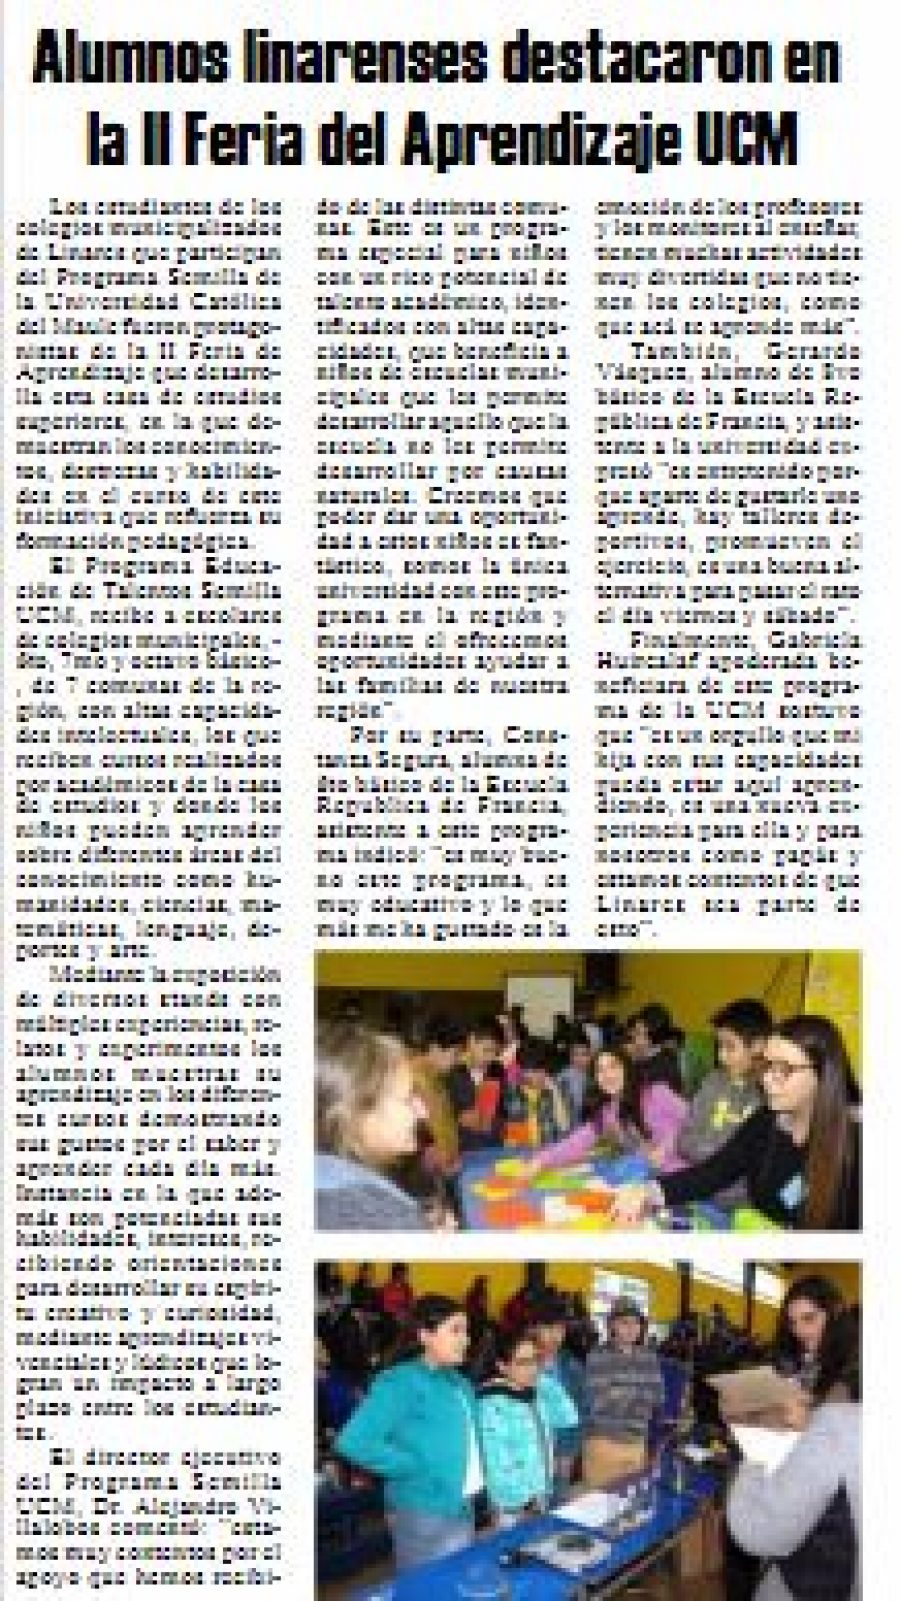 11 de julio en Diario El Heraldo: “Alumnos linarenses destacaron en la II Feria del Aprendizaje UCM”